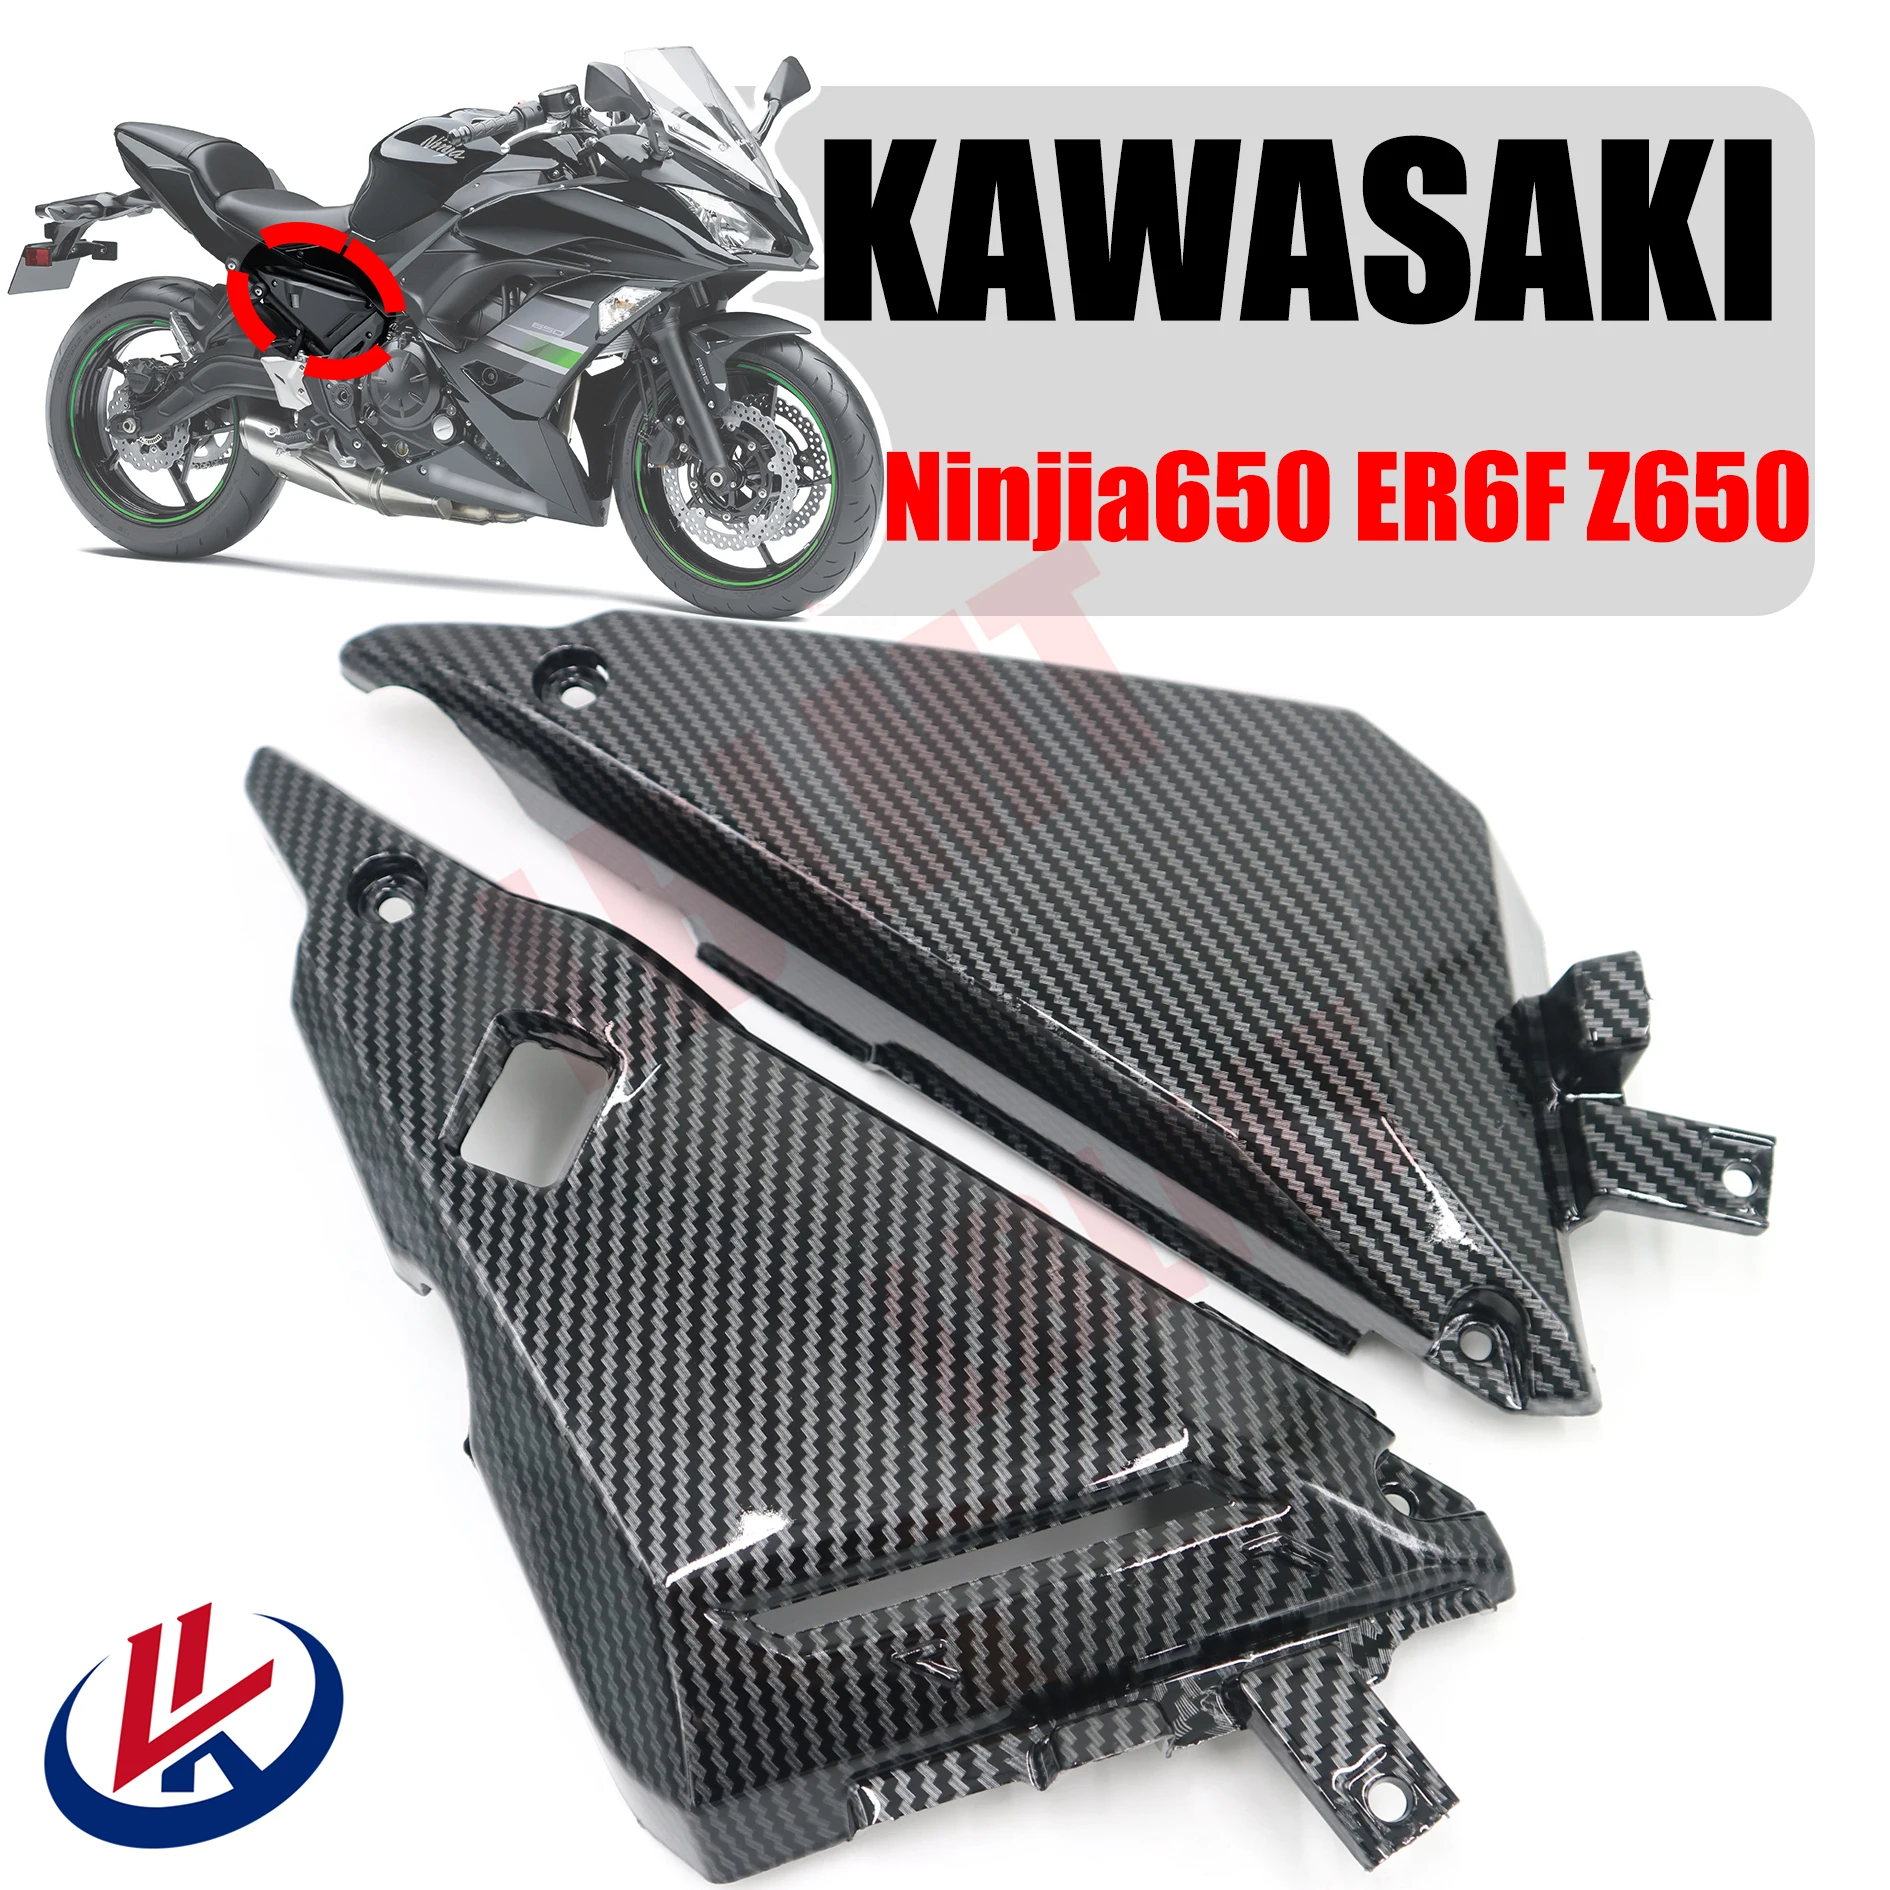 

For KAWASAKI Ninja 650 ER6F 2017 2018 2019 Z650 2017 2018 2019 2020 2021 2022 2023 Seat cushion lower cover plate fairing